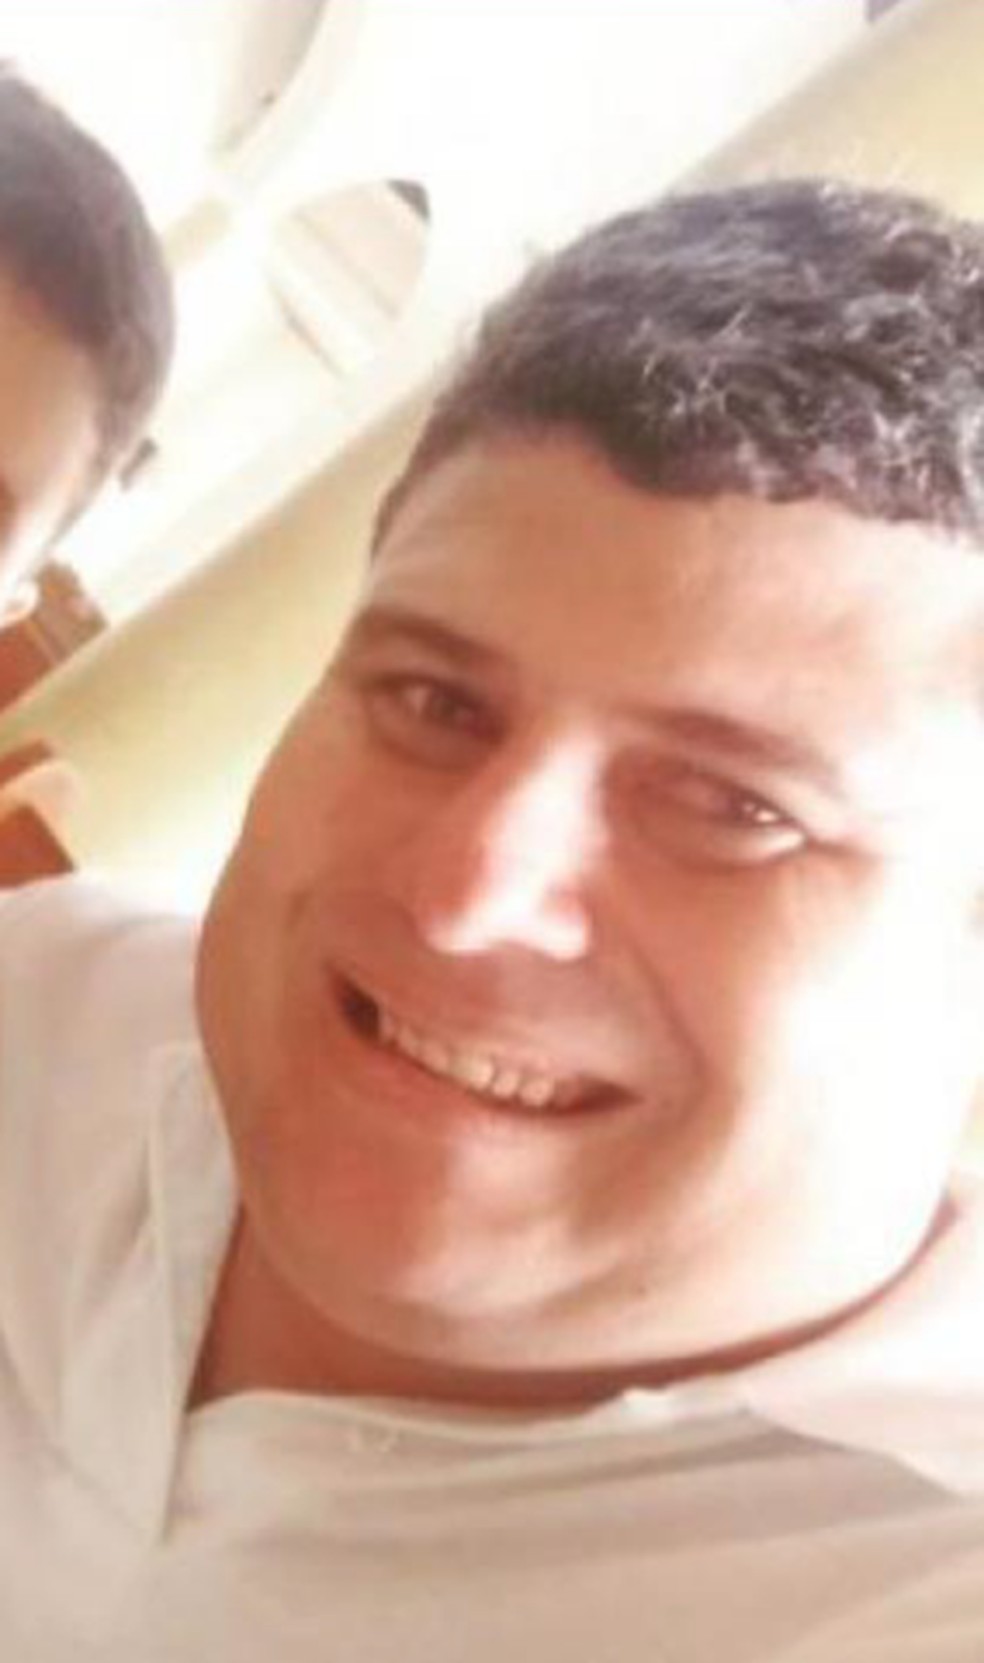 Hugo José está envolvido em crime da morte de personal trainer em Caruaru — Foto: Divulgação/Polícia Civil